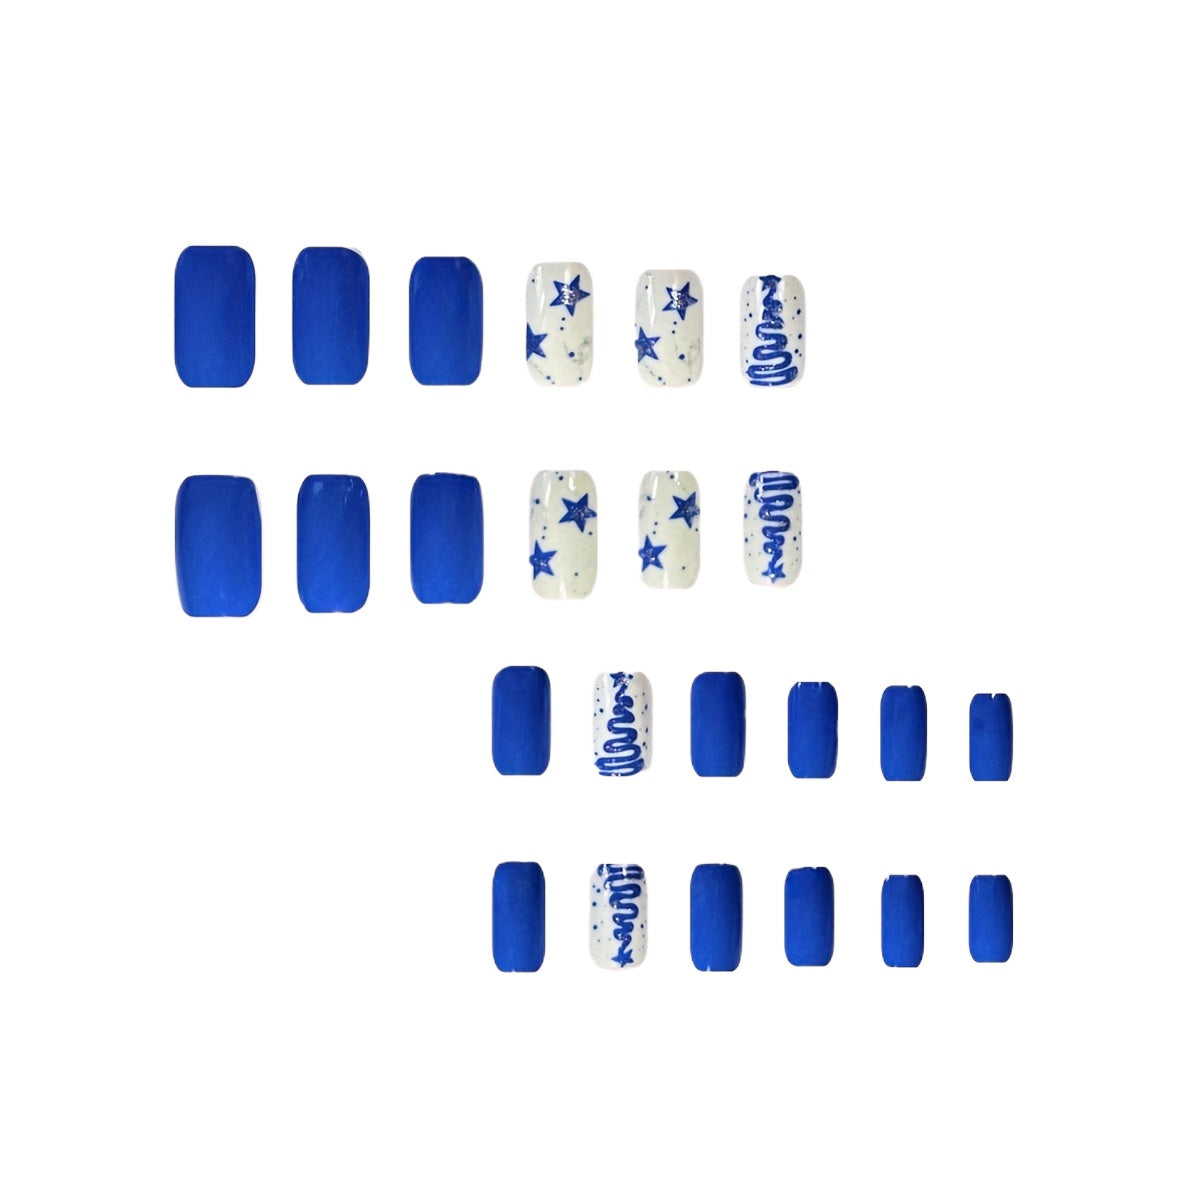 24pcs Blue Christmas Tree Press On Nails, Short Square Shape, Full Cover Fake Nails for Women